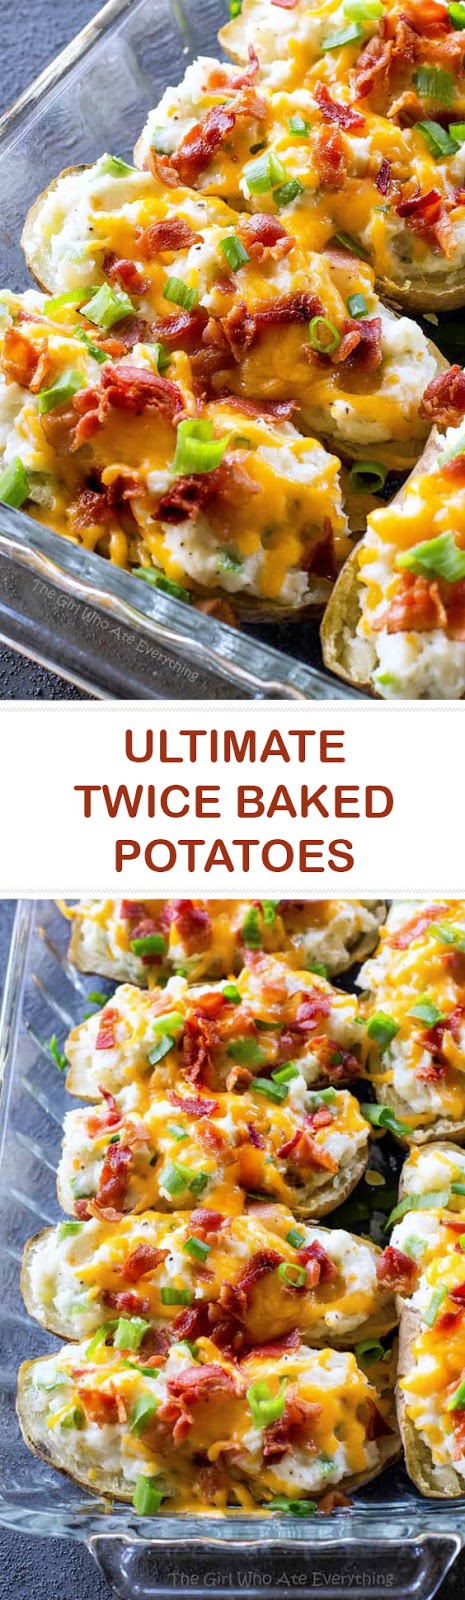 Ultimate Twice Baked Potatoes